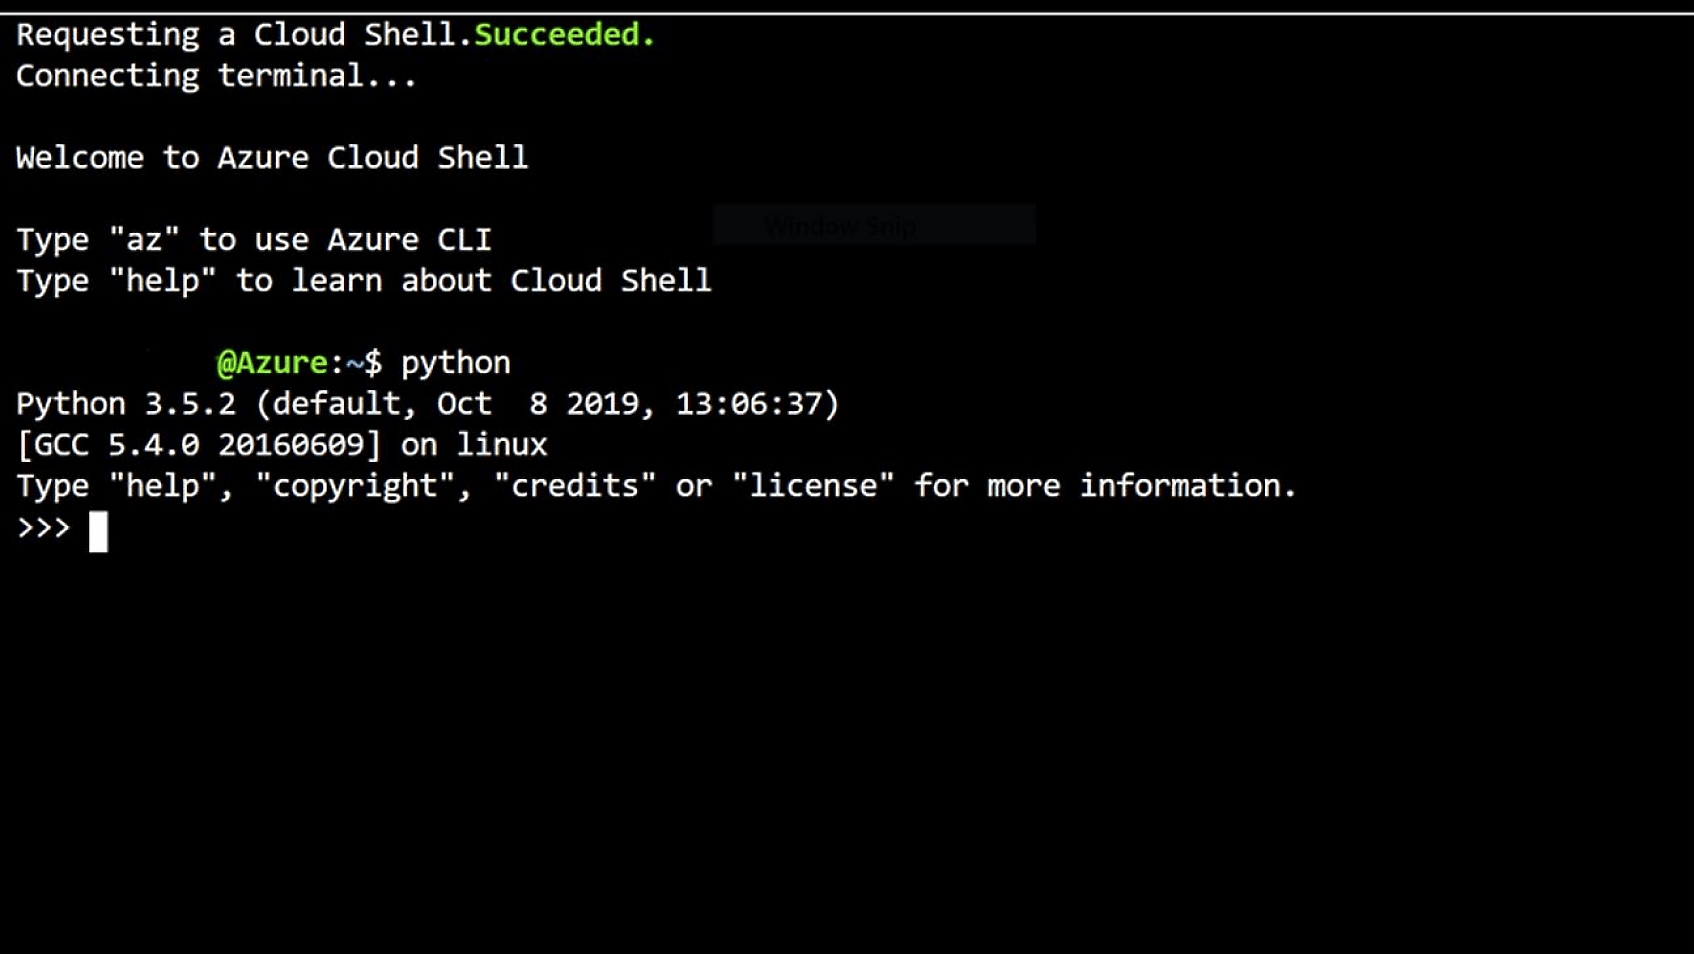 Azure Cloud Shell terminali bağlantısı ve karşılama iletisi.